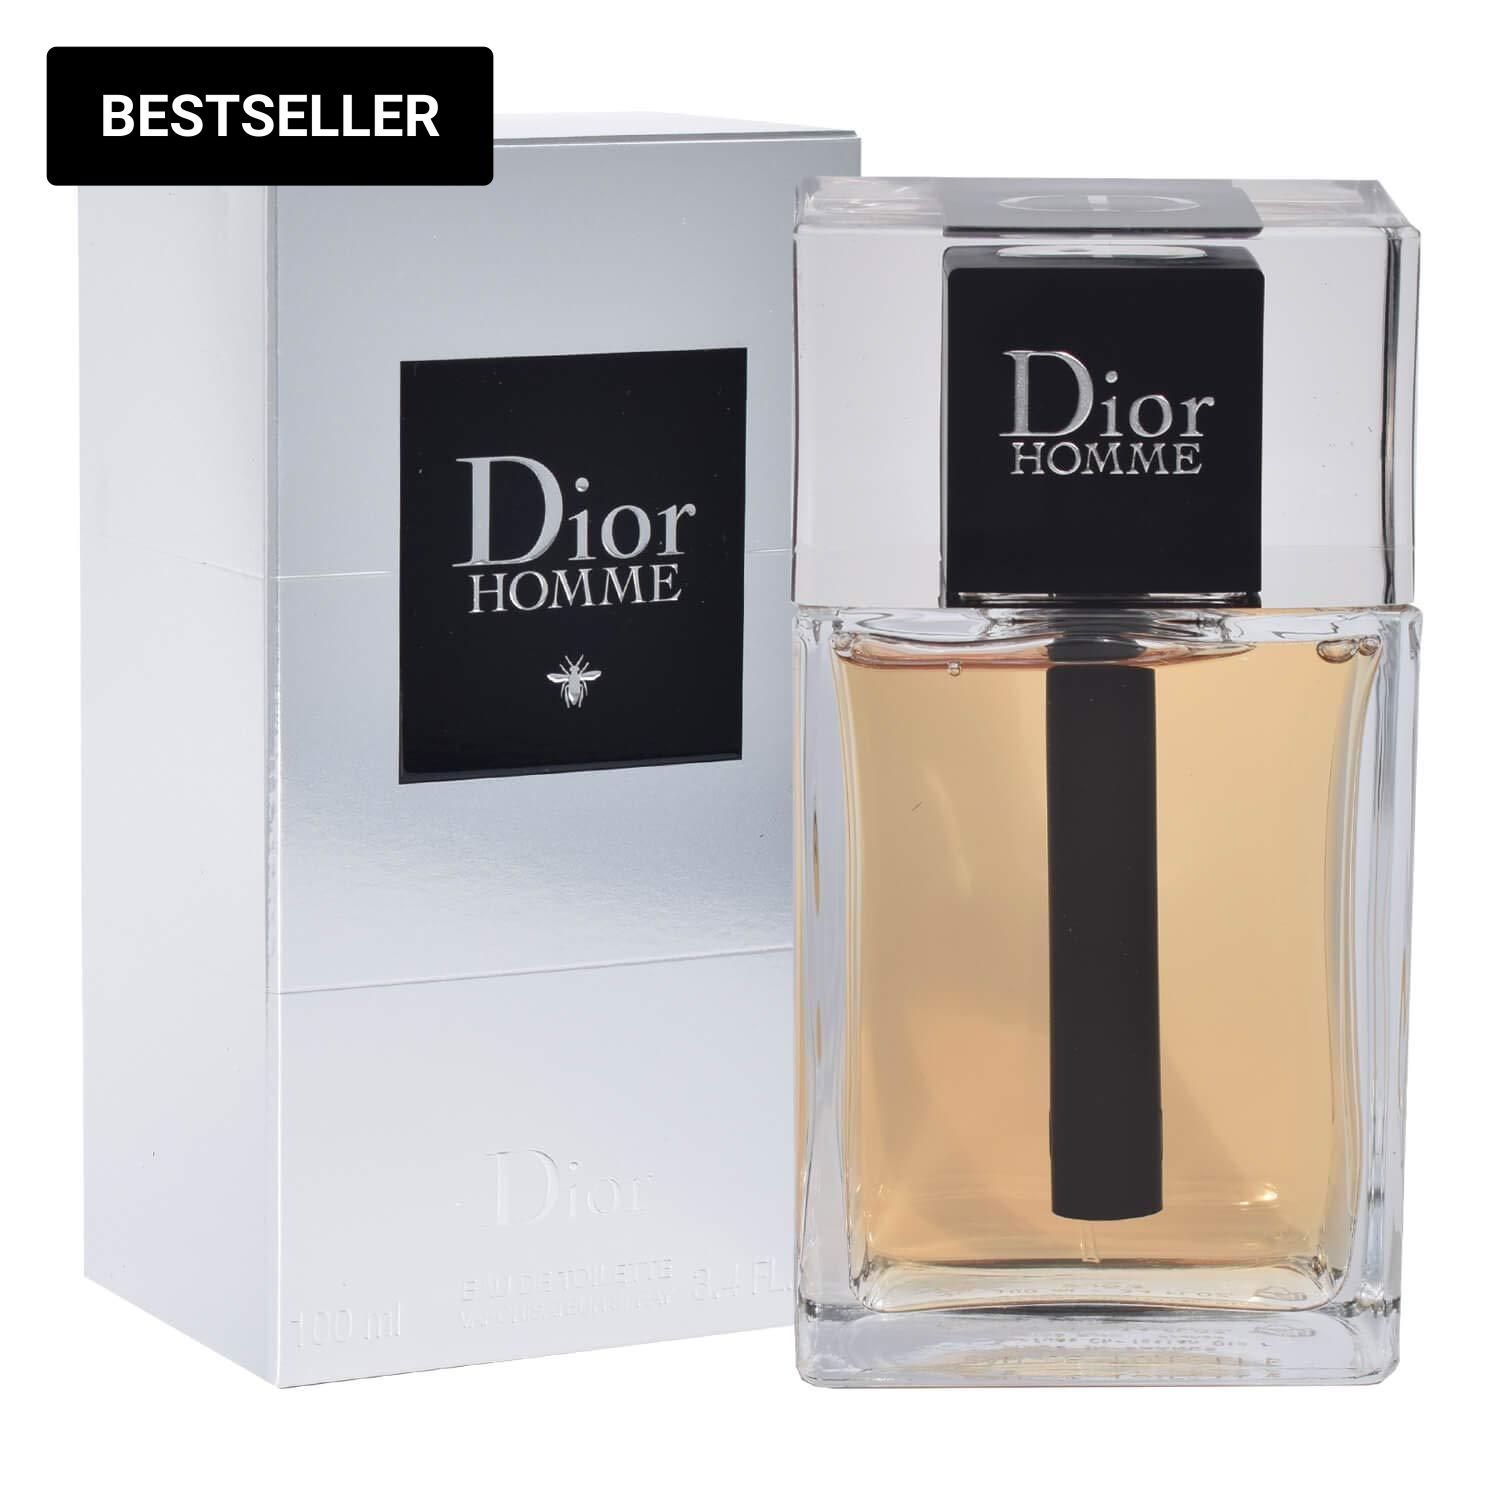 Dior Homme 100ml - Fragrance Deliver SA